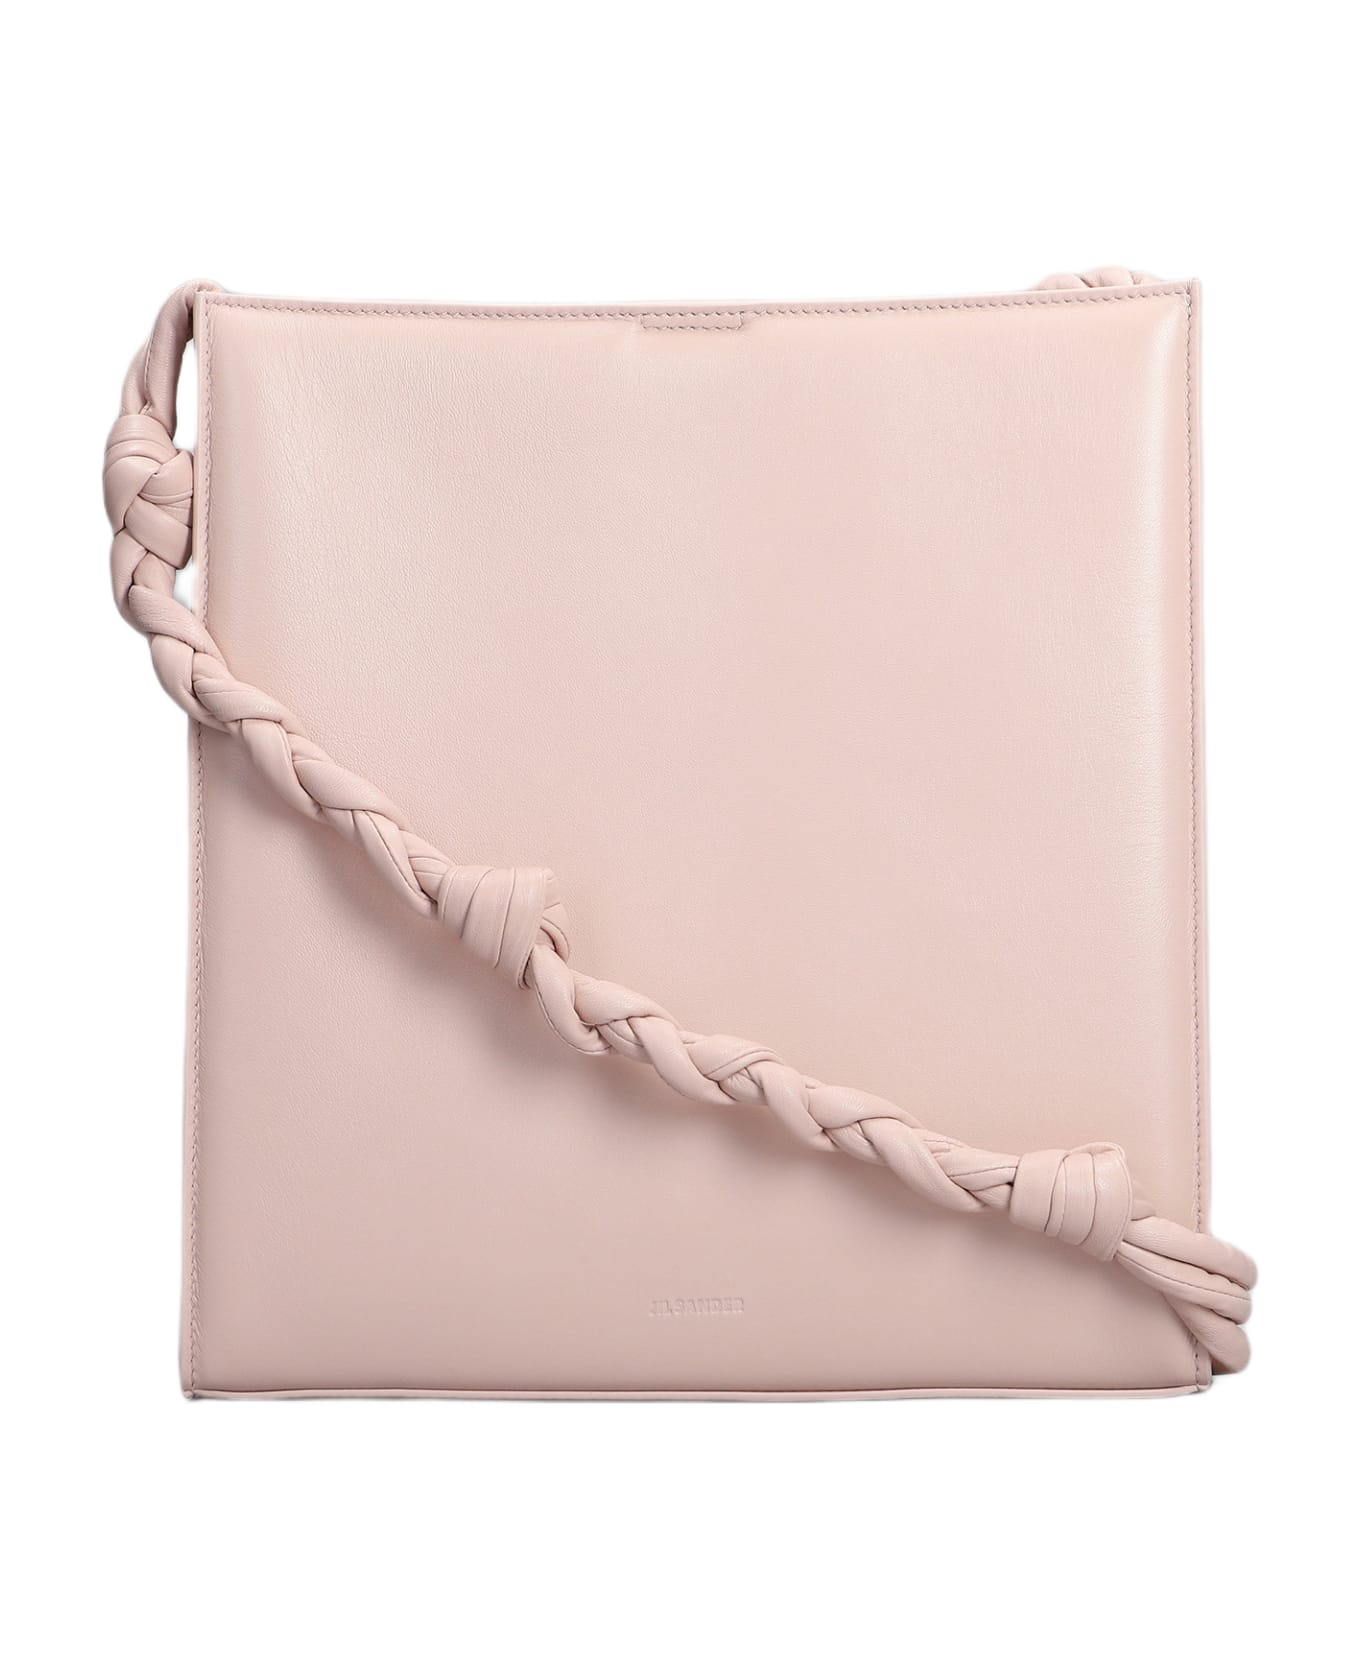 Jil Sander Shoulder Bag In Rose-pink Leather - rose-pink